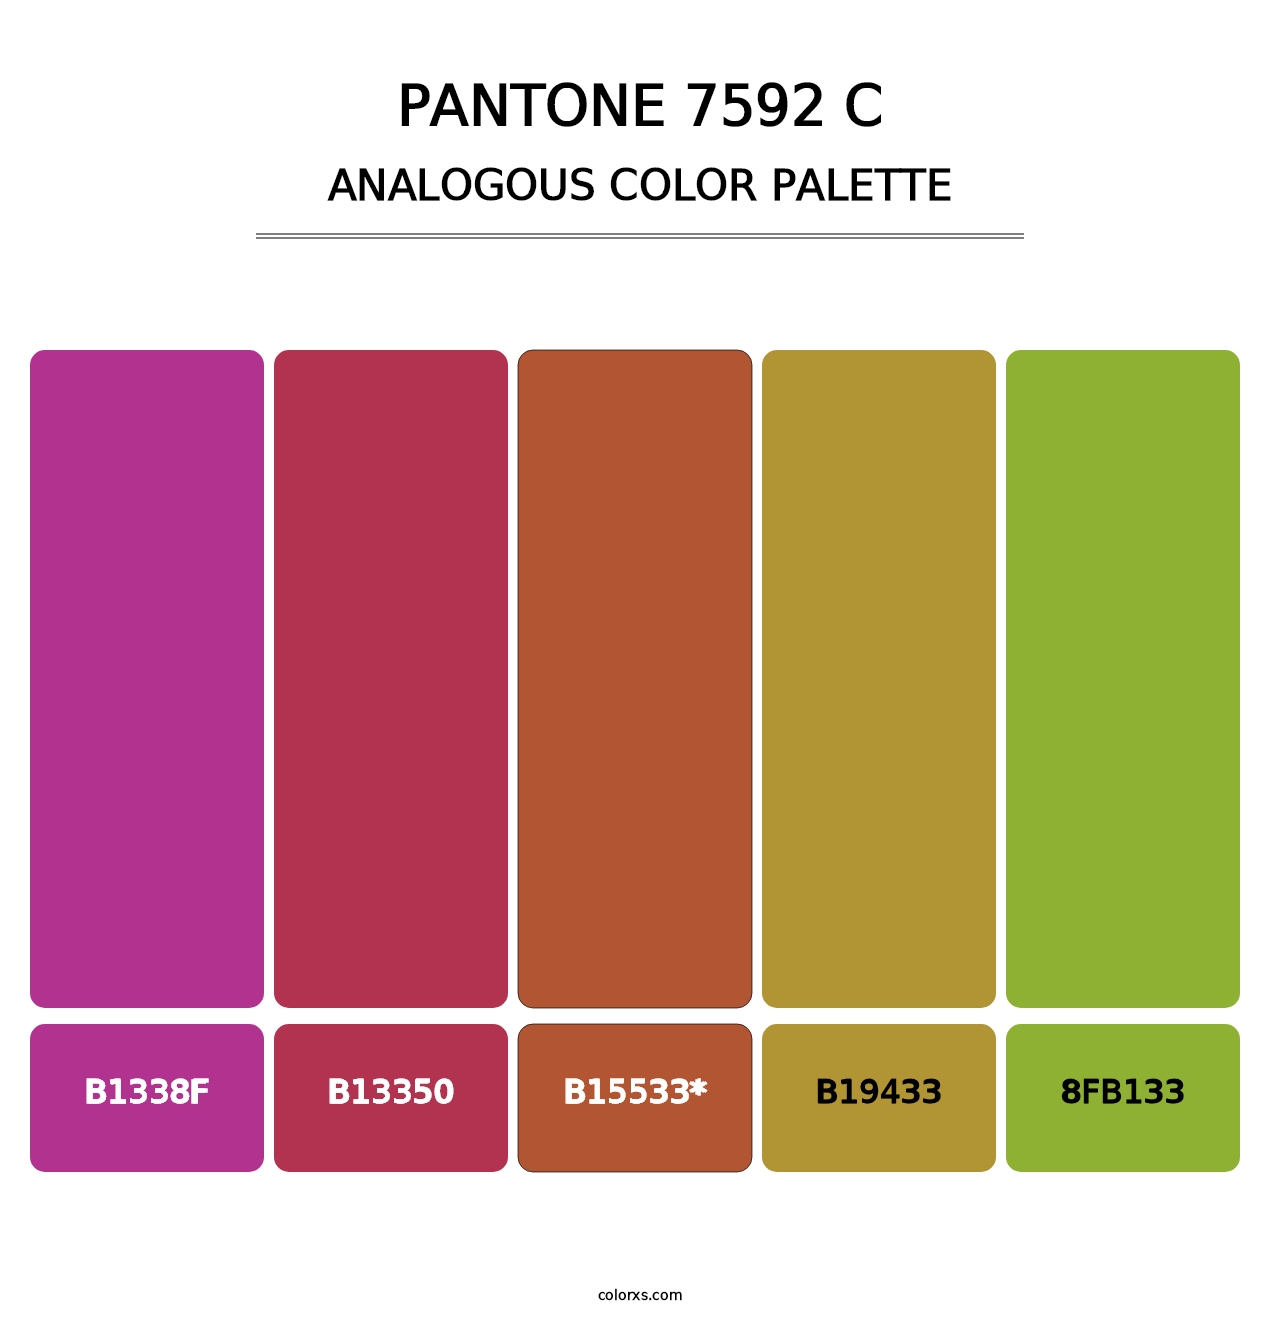 PANTONE 7592 C - Analogous Color Palette